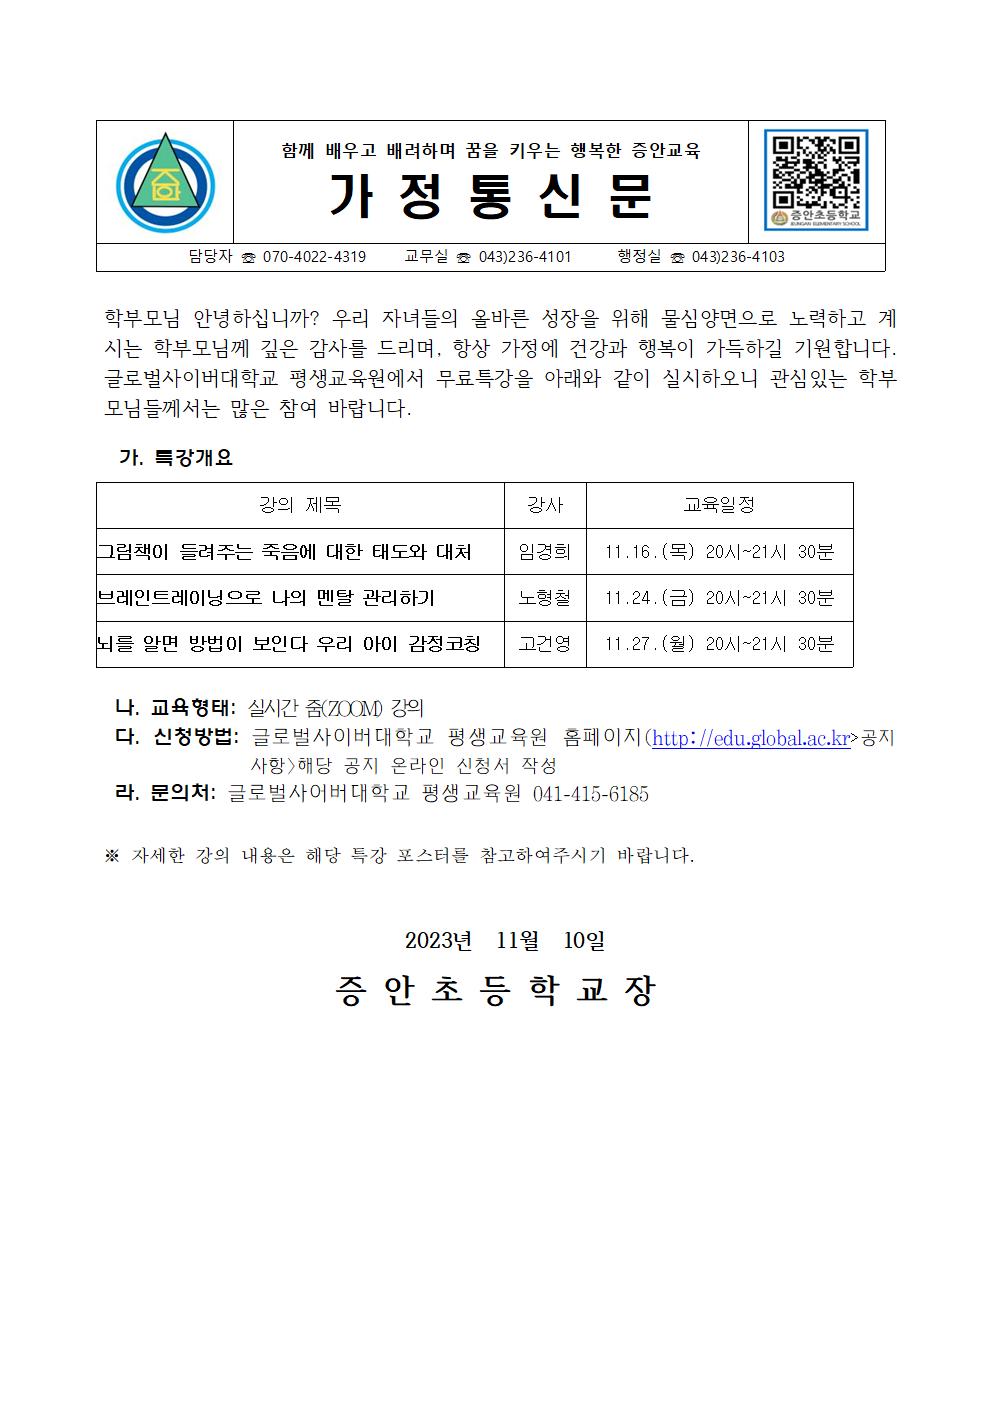 글로벌사이버대학교 평생교육원 무료특강 안내001